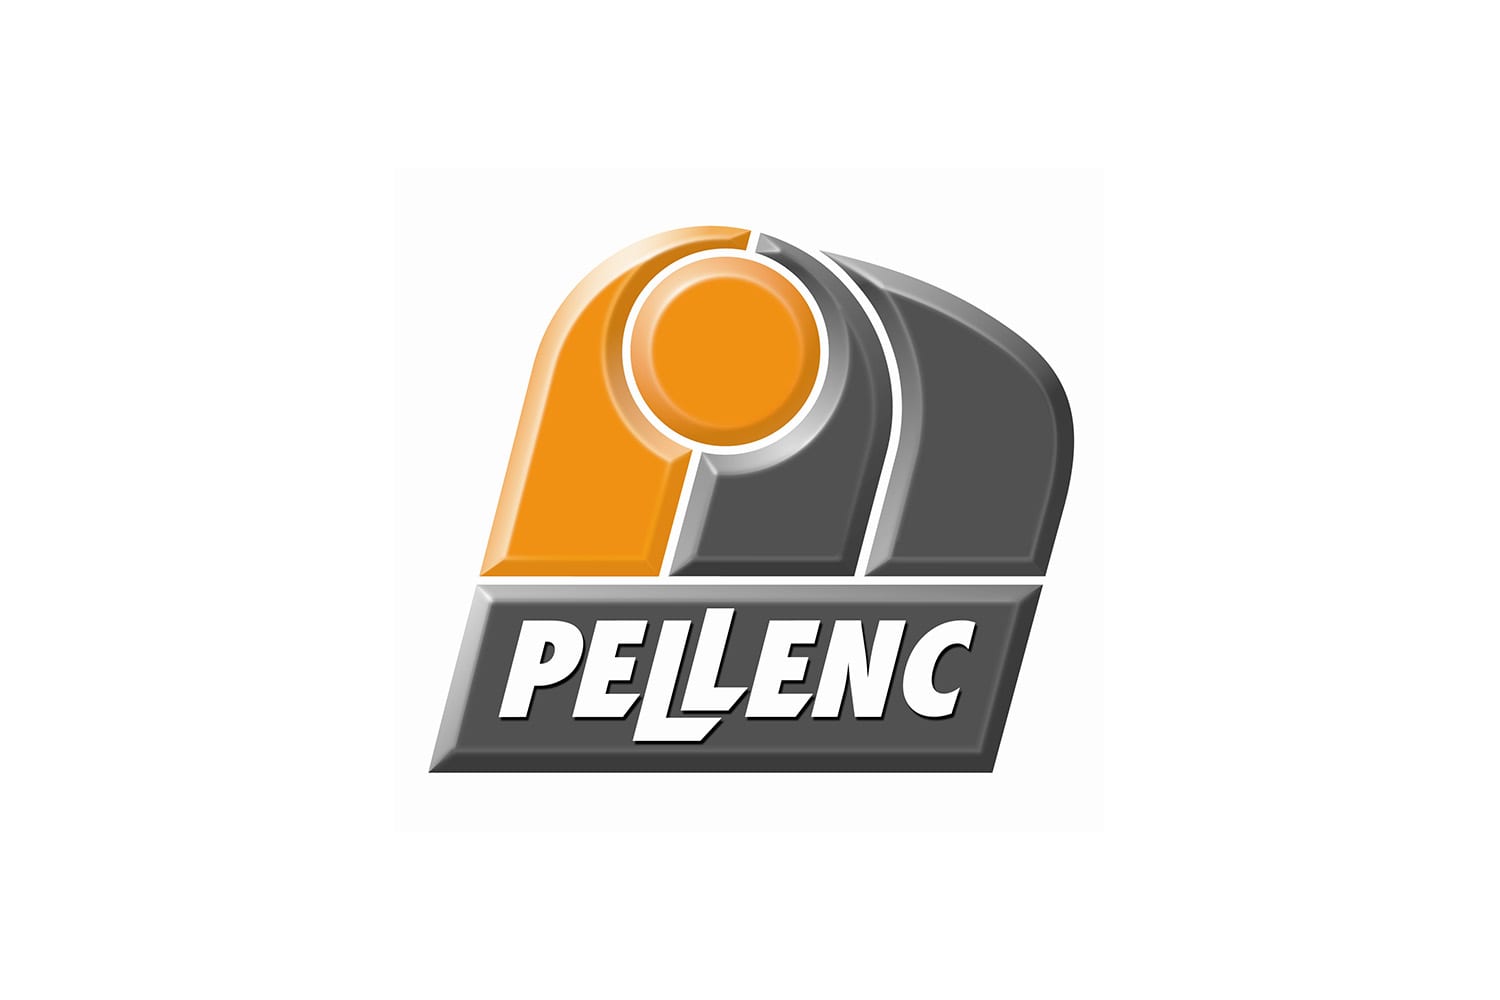 oechsle_0011_Pellenc_logo